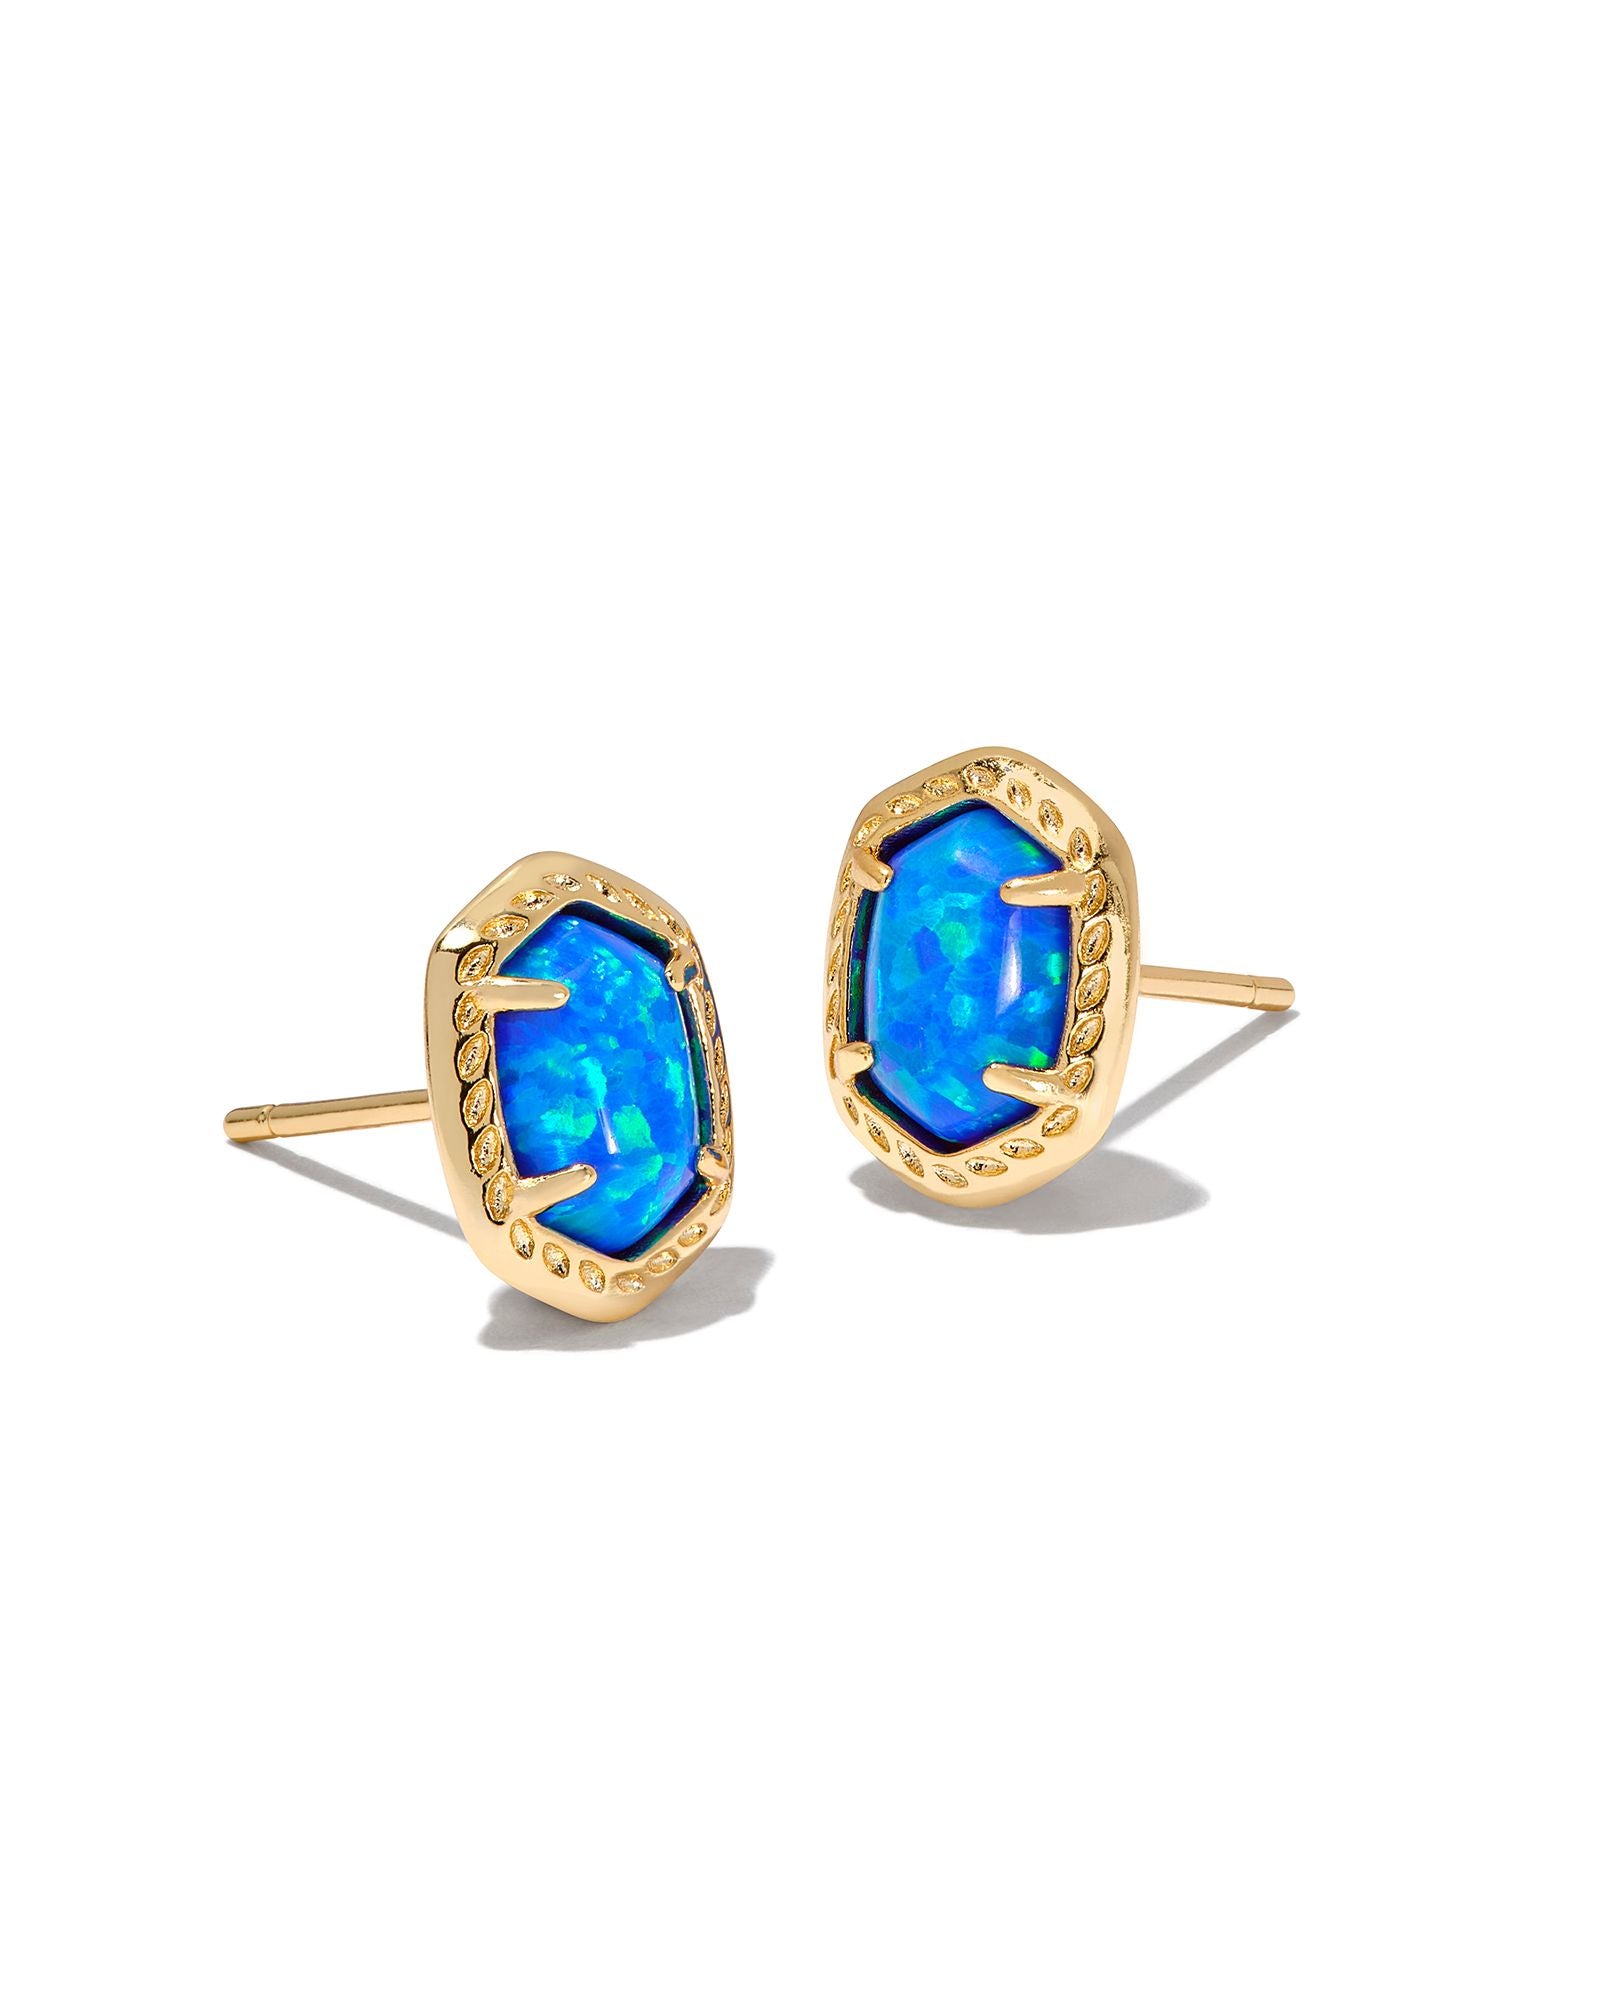 Daphne Framed Stud Earrings in Gold Bright Blue Kyocera Opal